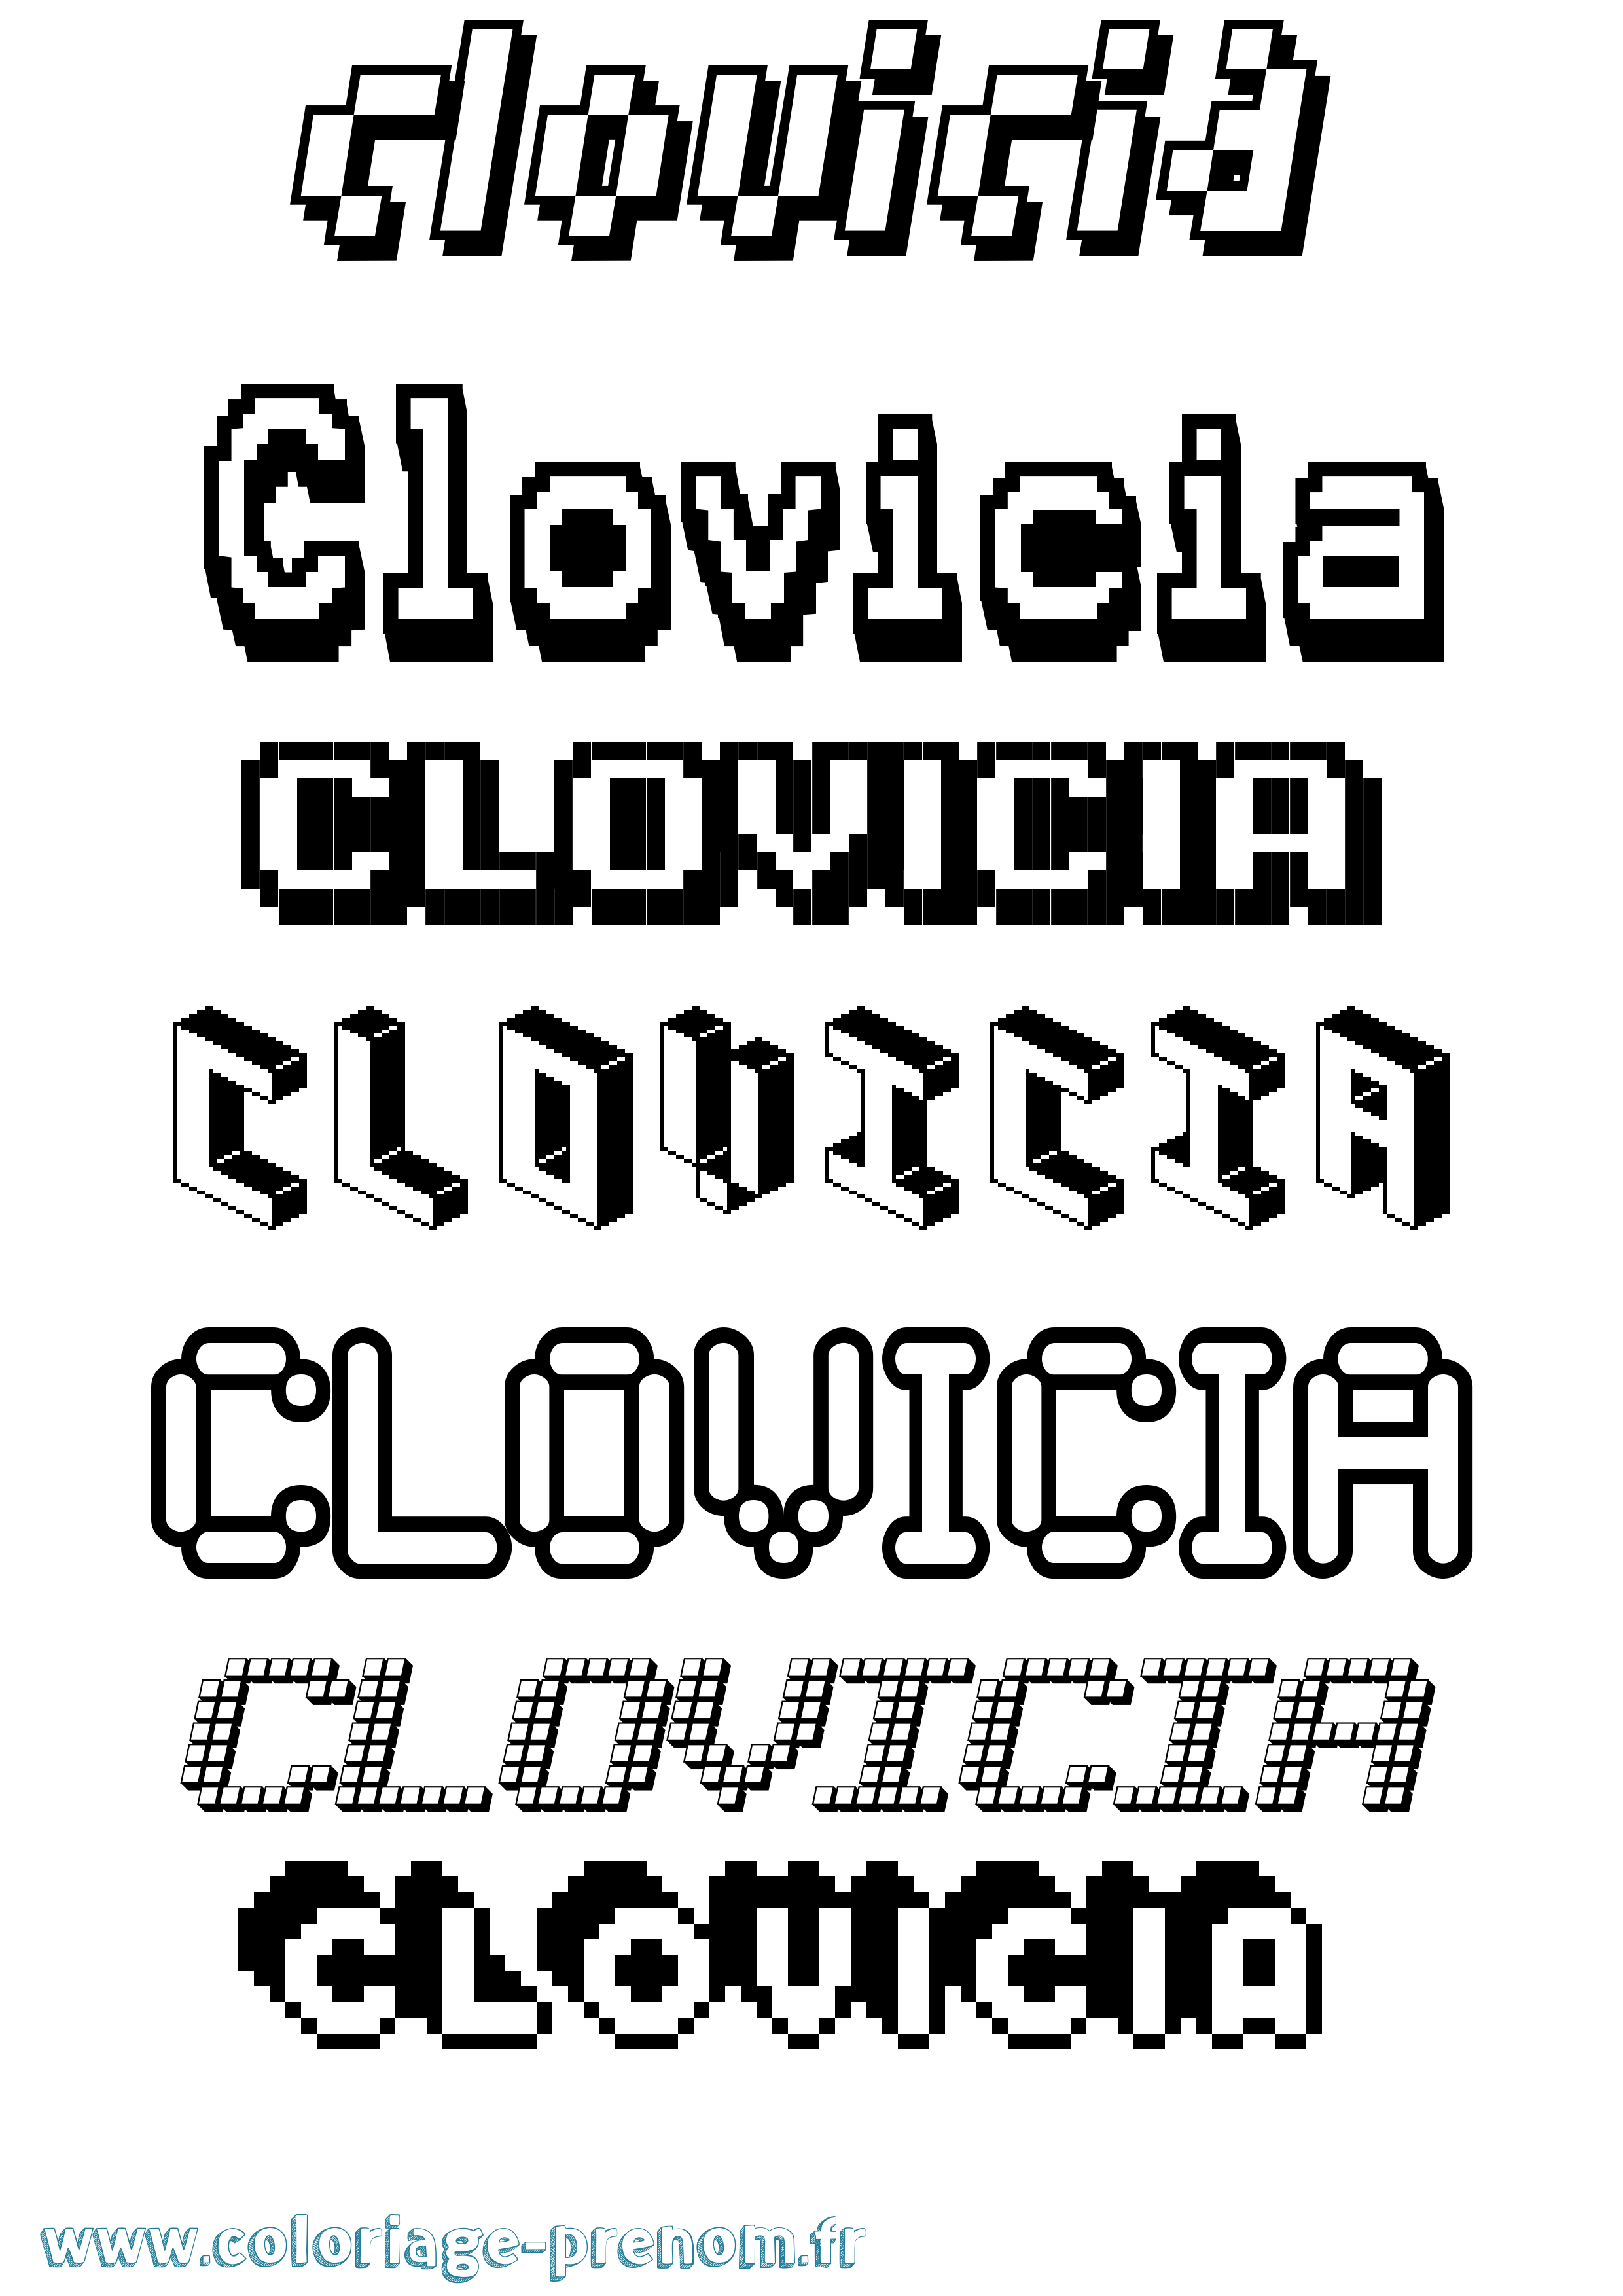 Coloriage prénom Clovicia Pixel